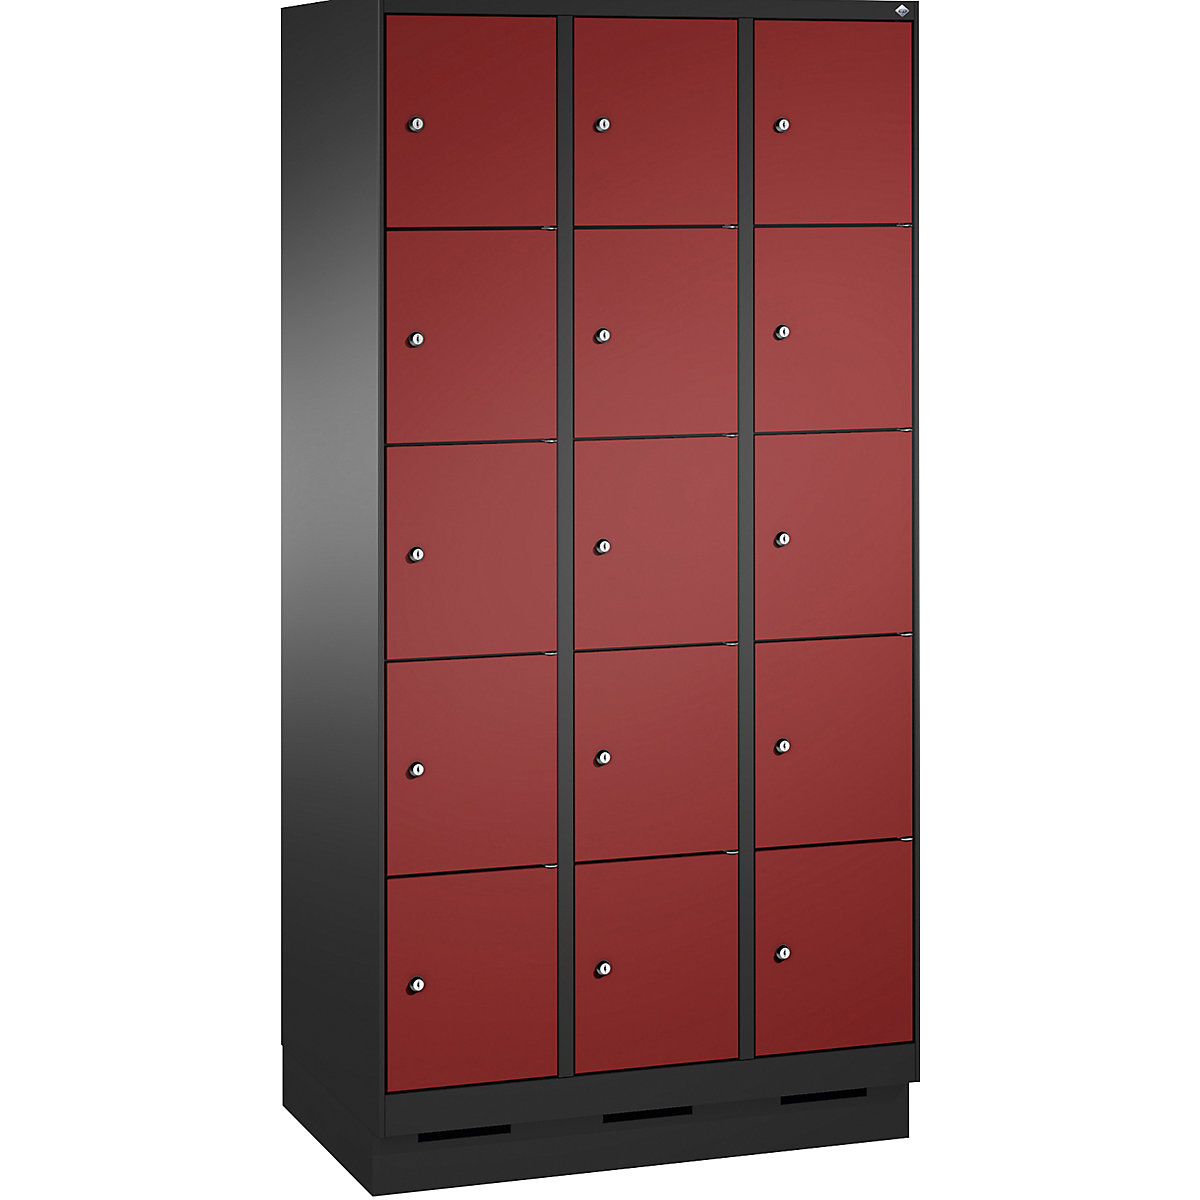 Armoire à casiers sur socle EVOLO – C+P, 3 compartiments, 5 casiers chacun, largeur compartiments 300 mm, gris noir / rouge rubis-15